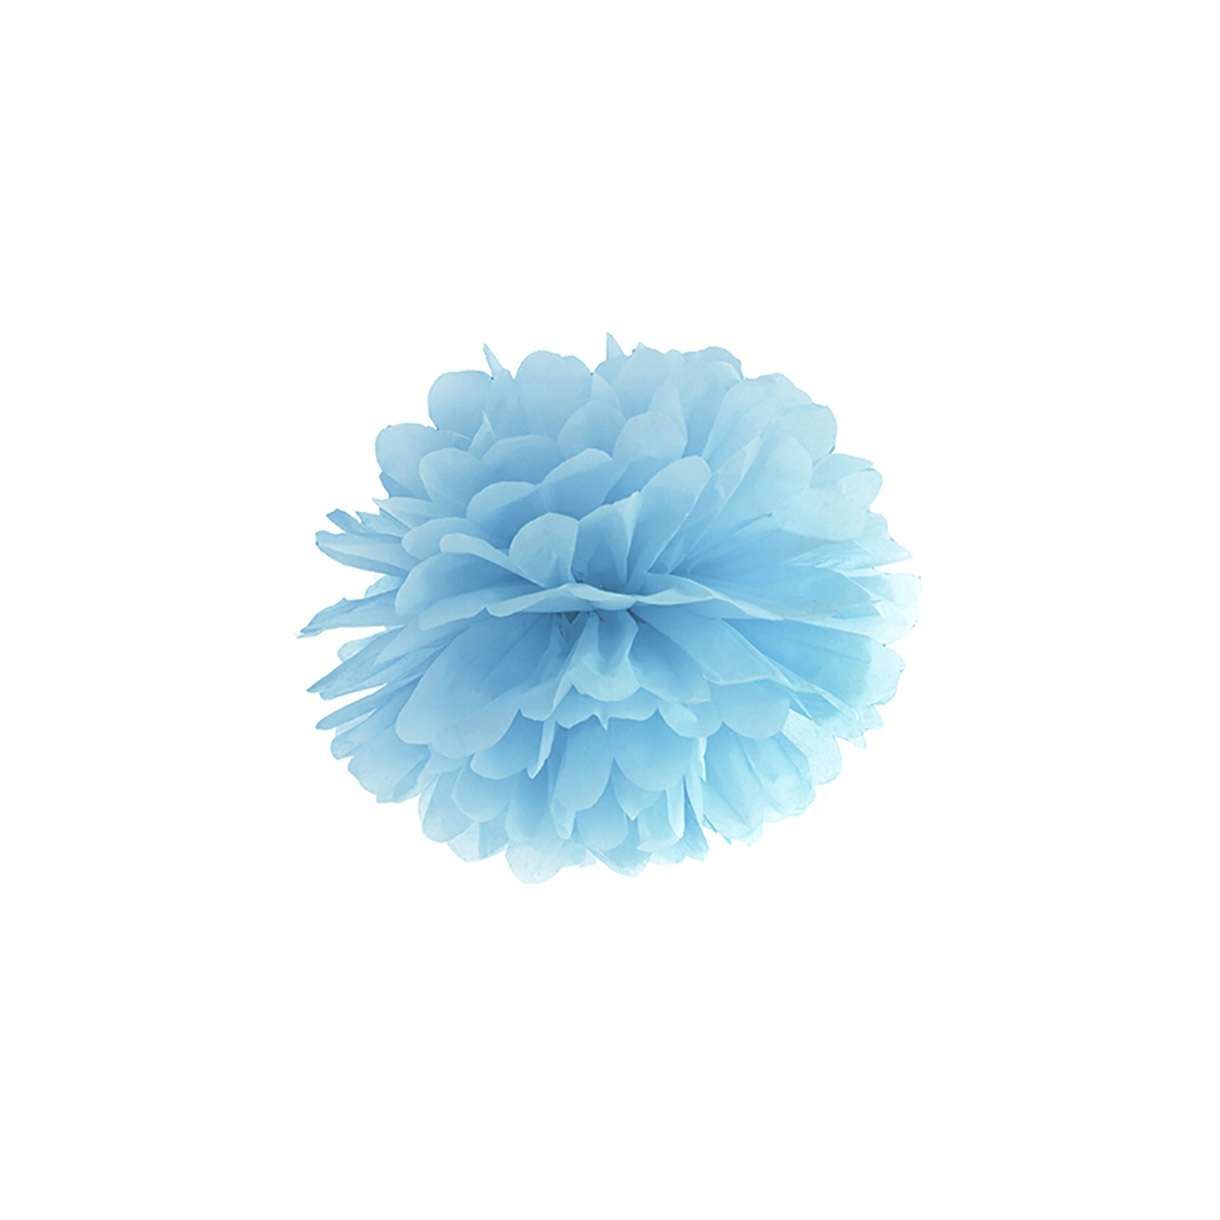 Помпон из салфетки голубой 25см в цветочек